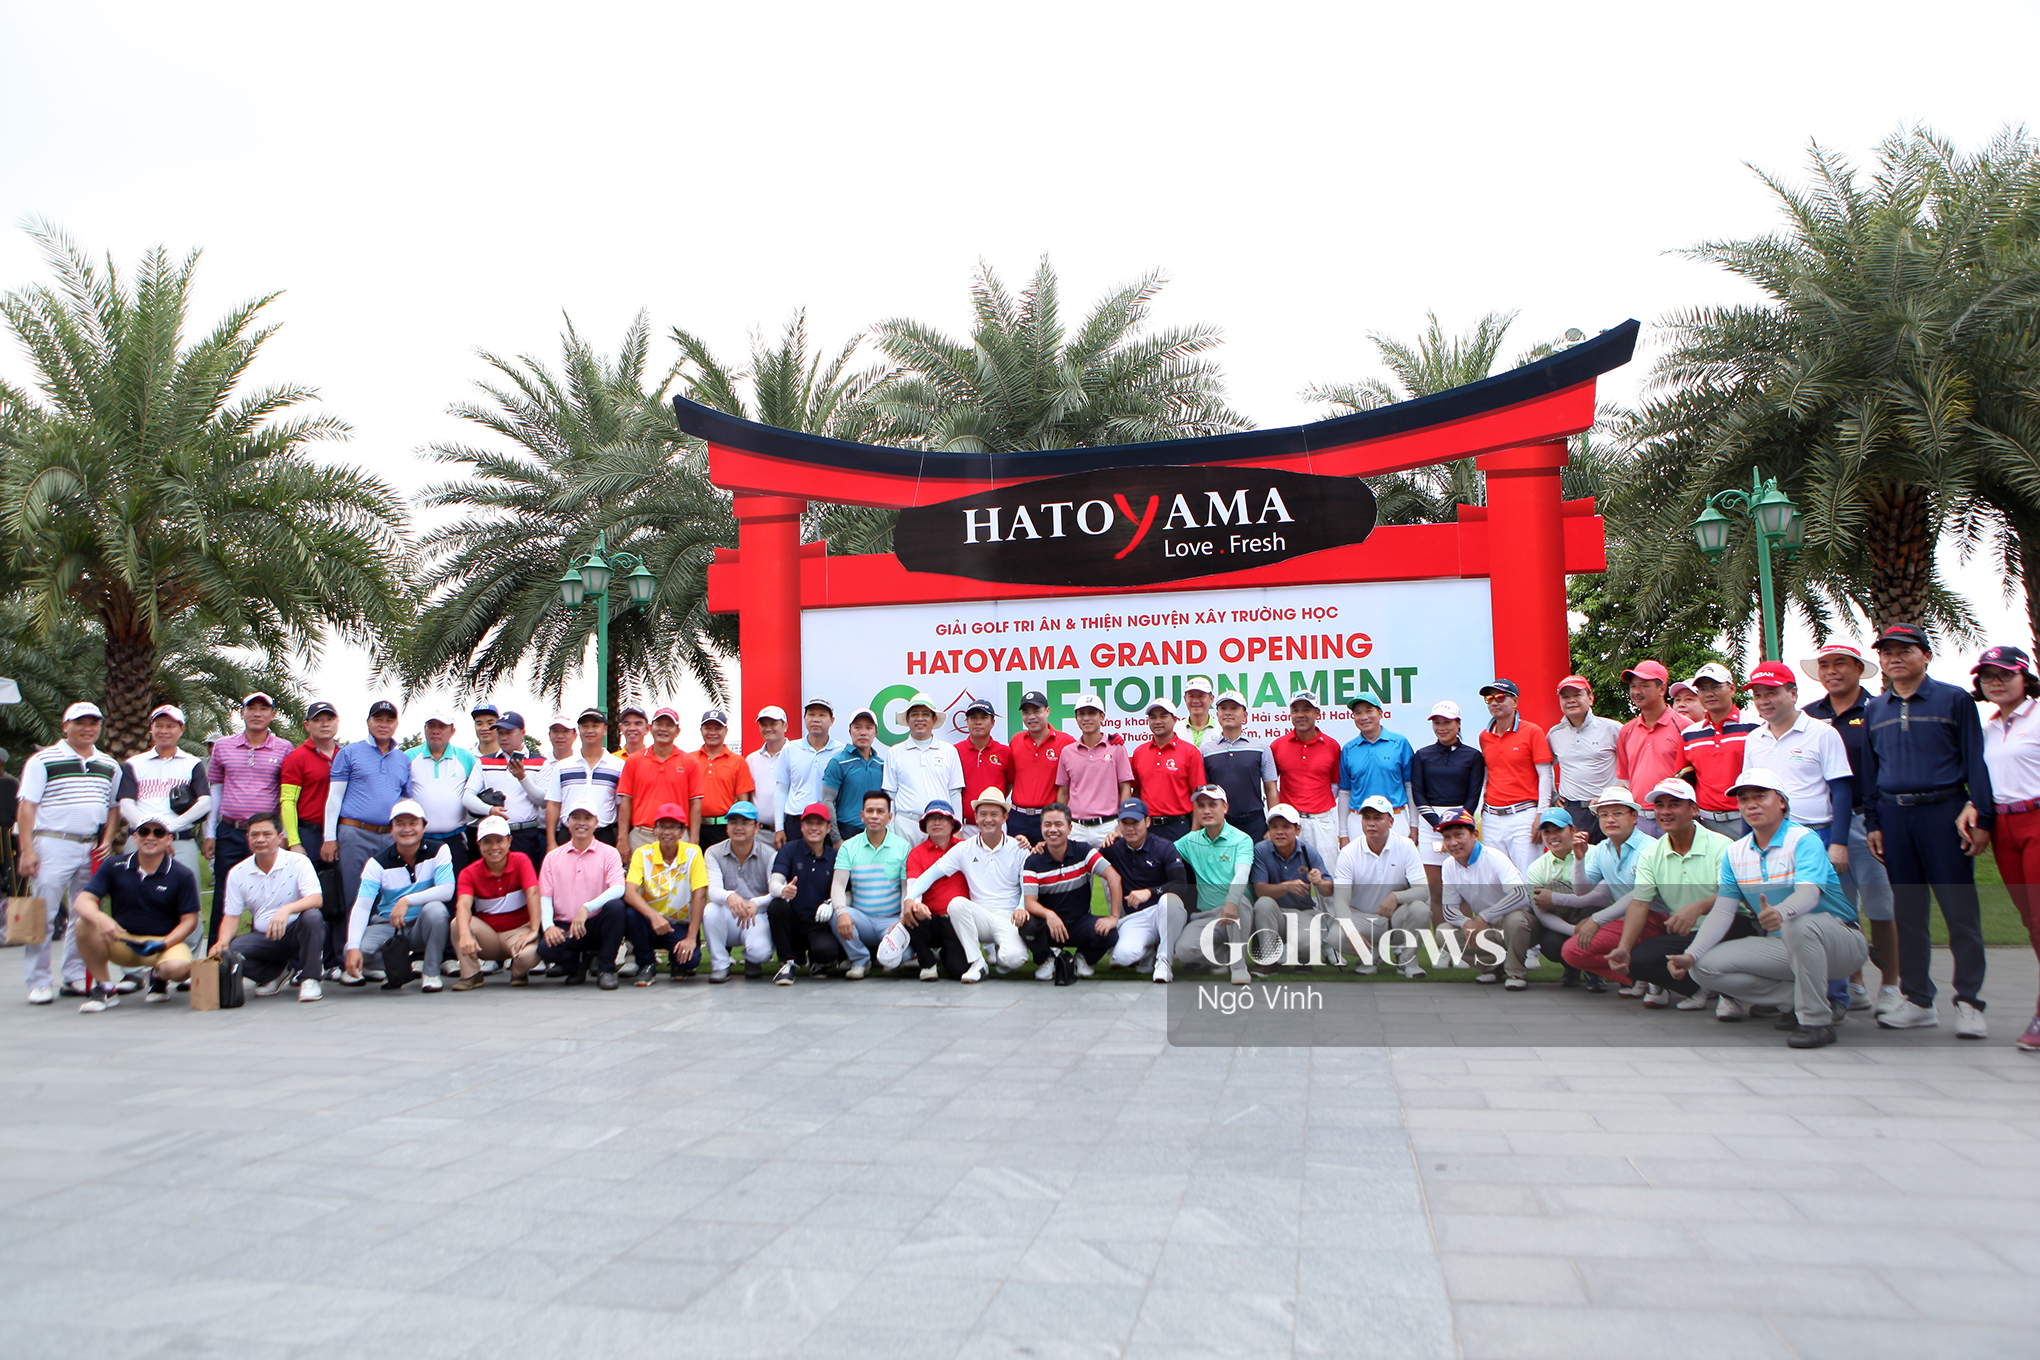 Gây quỹ 600 triệu đồng xây dựng trường học cho trẻ vùng khó khăn tại Hatoyama Grand Opening Golf Tournament năm 2019